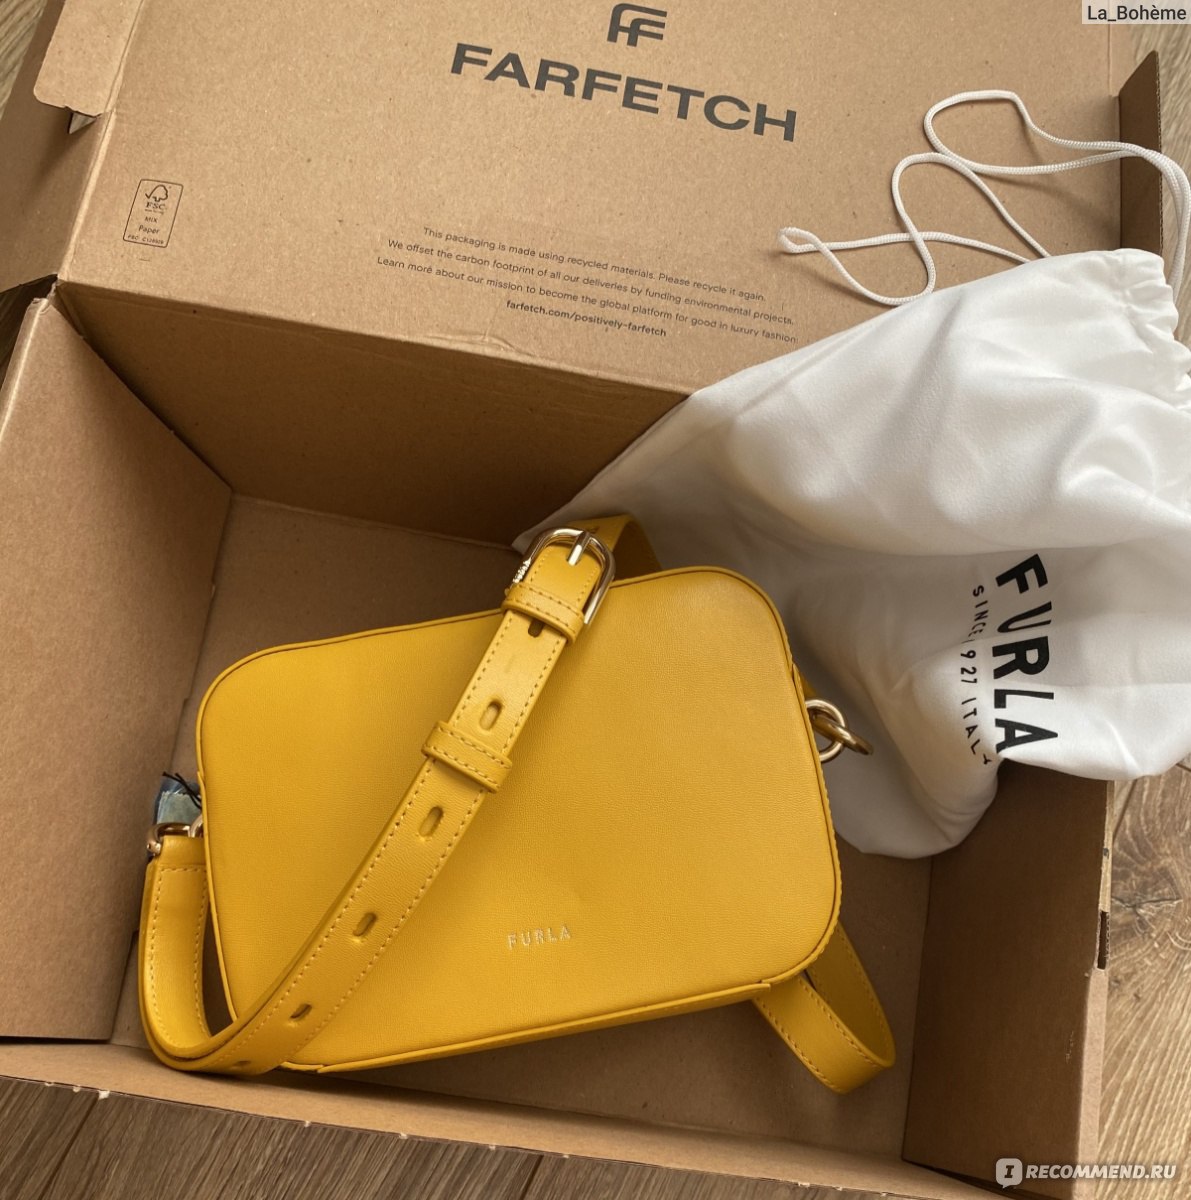 Farfetch Официальный Сайт Интернет Магазин